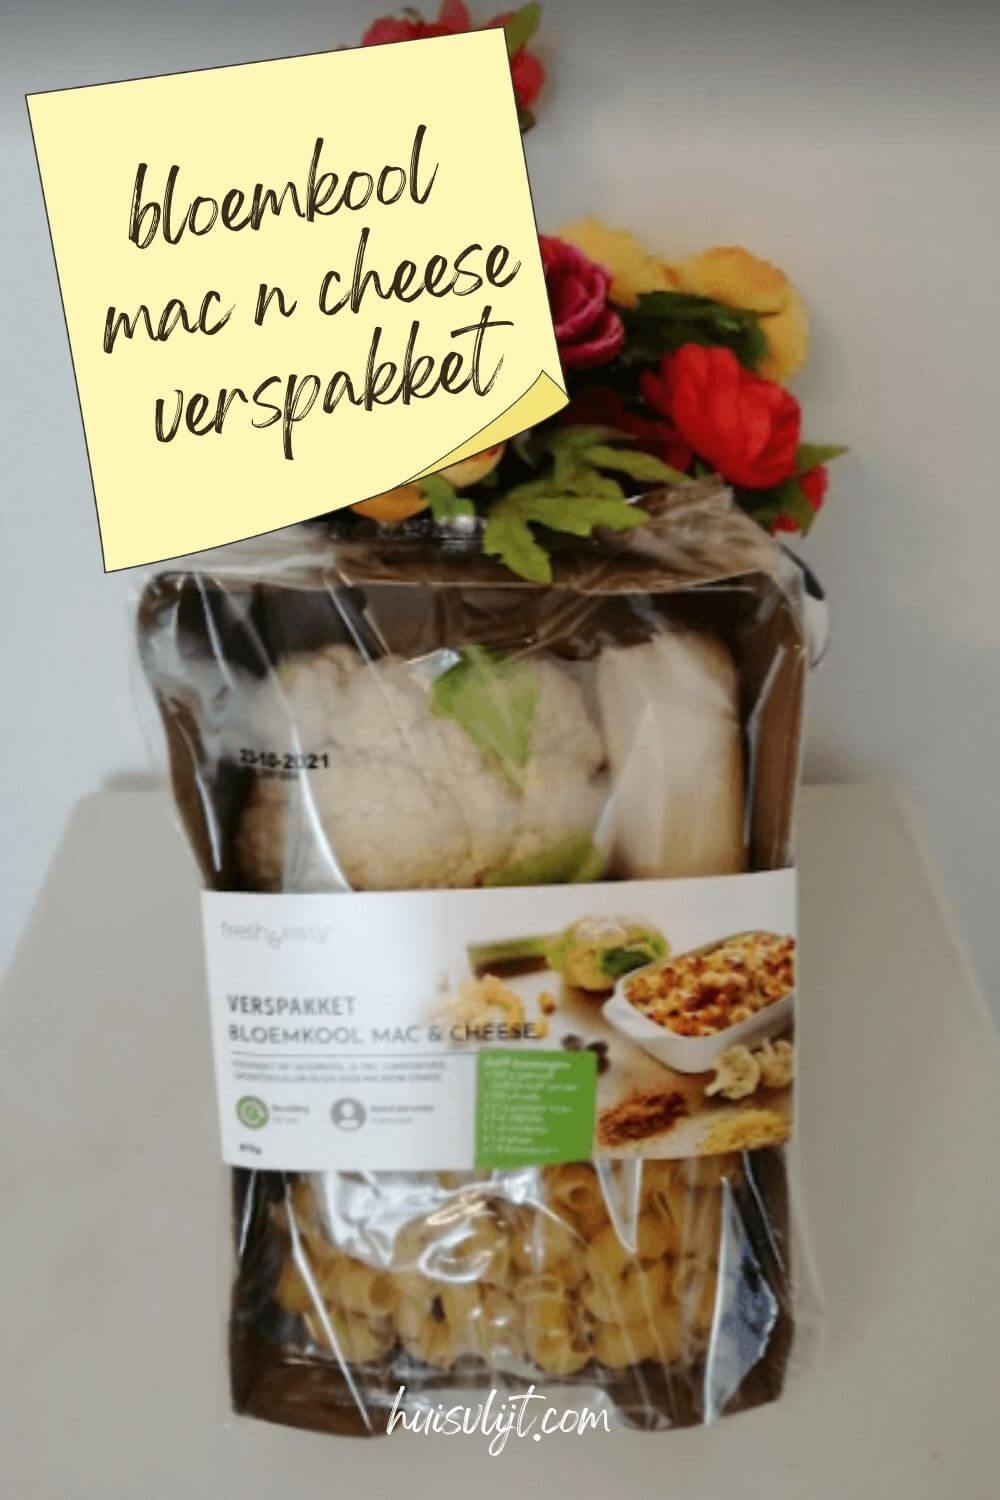 Mac and Cheese: Bloemkool Mac n cheese verspakket van 4,99